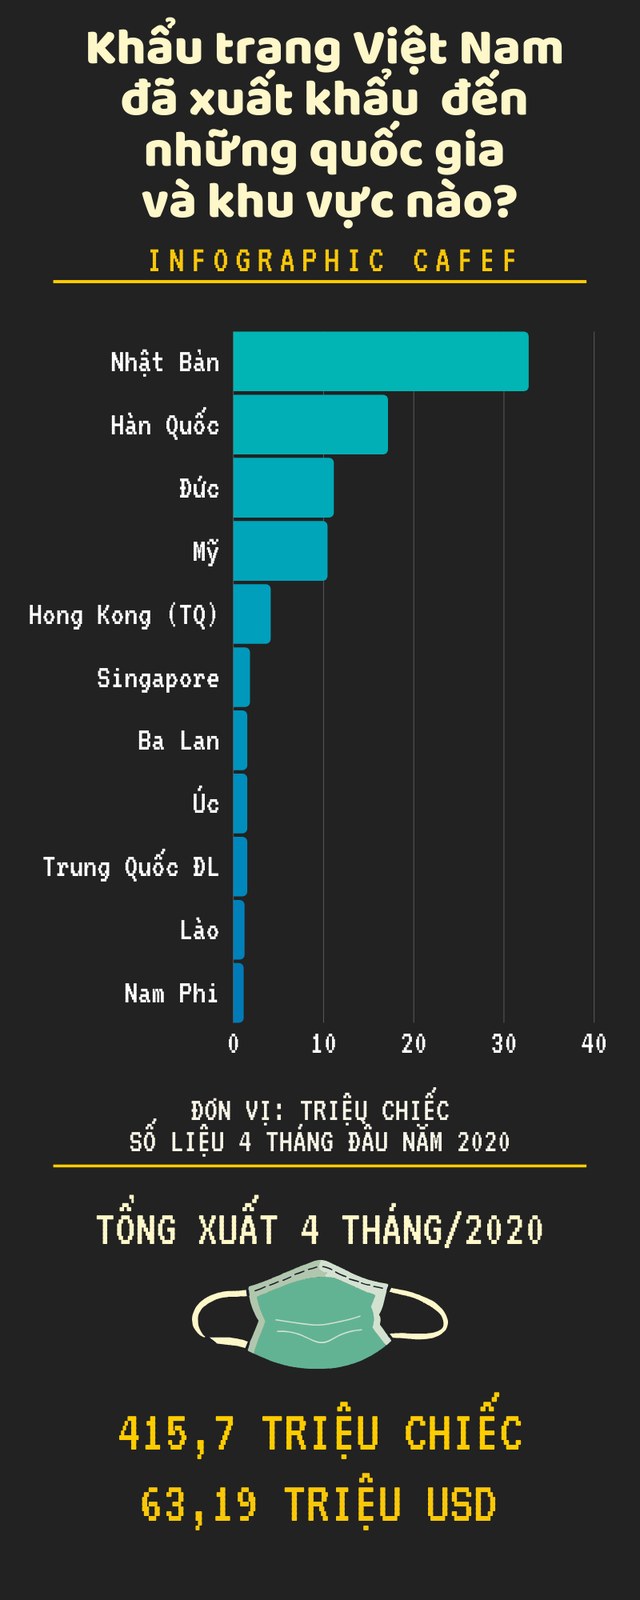 Covid-19: 415,7 triệu khẩu trang Việt Nam xuất khẩu trong 4 tháng đầu năm đã đến những quốc gia và khu vực nào? - Ảnh 1.